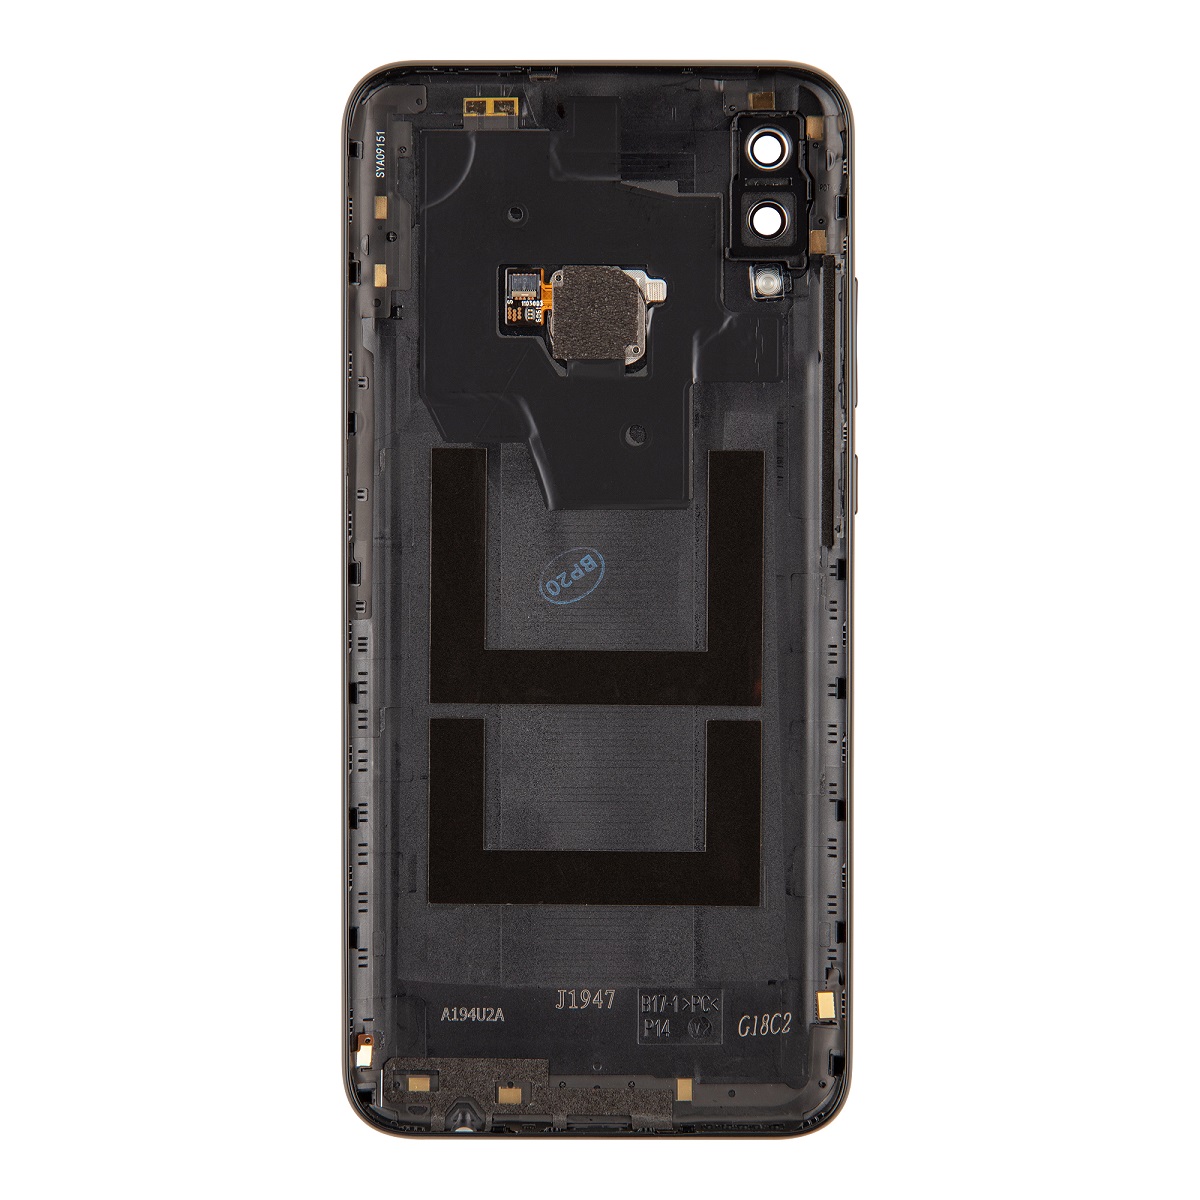 Kryt baterie Huawei P Smart 2019 vč. fingerprintu black (Service Pack)